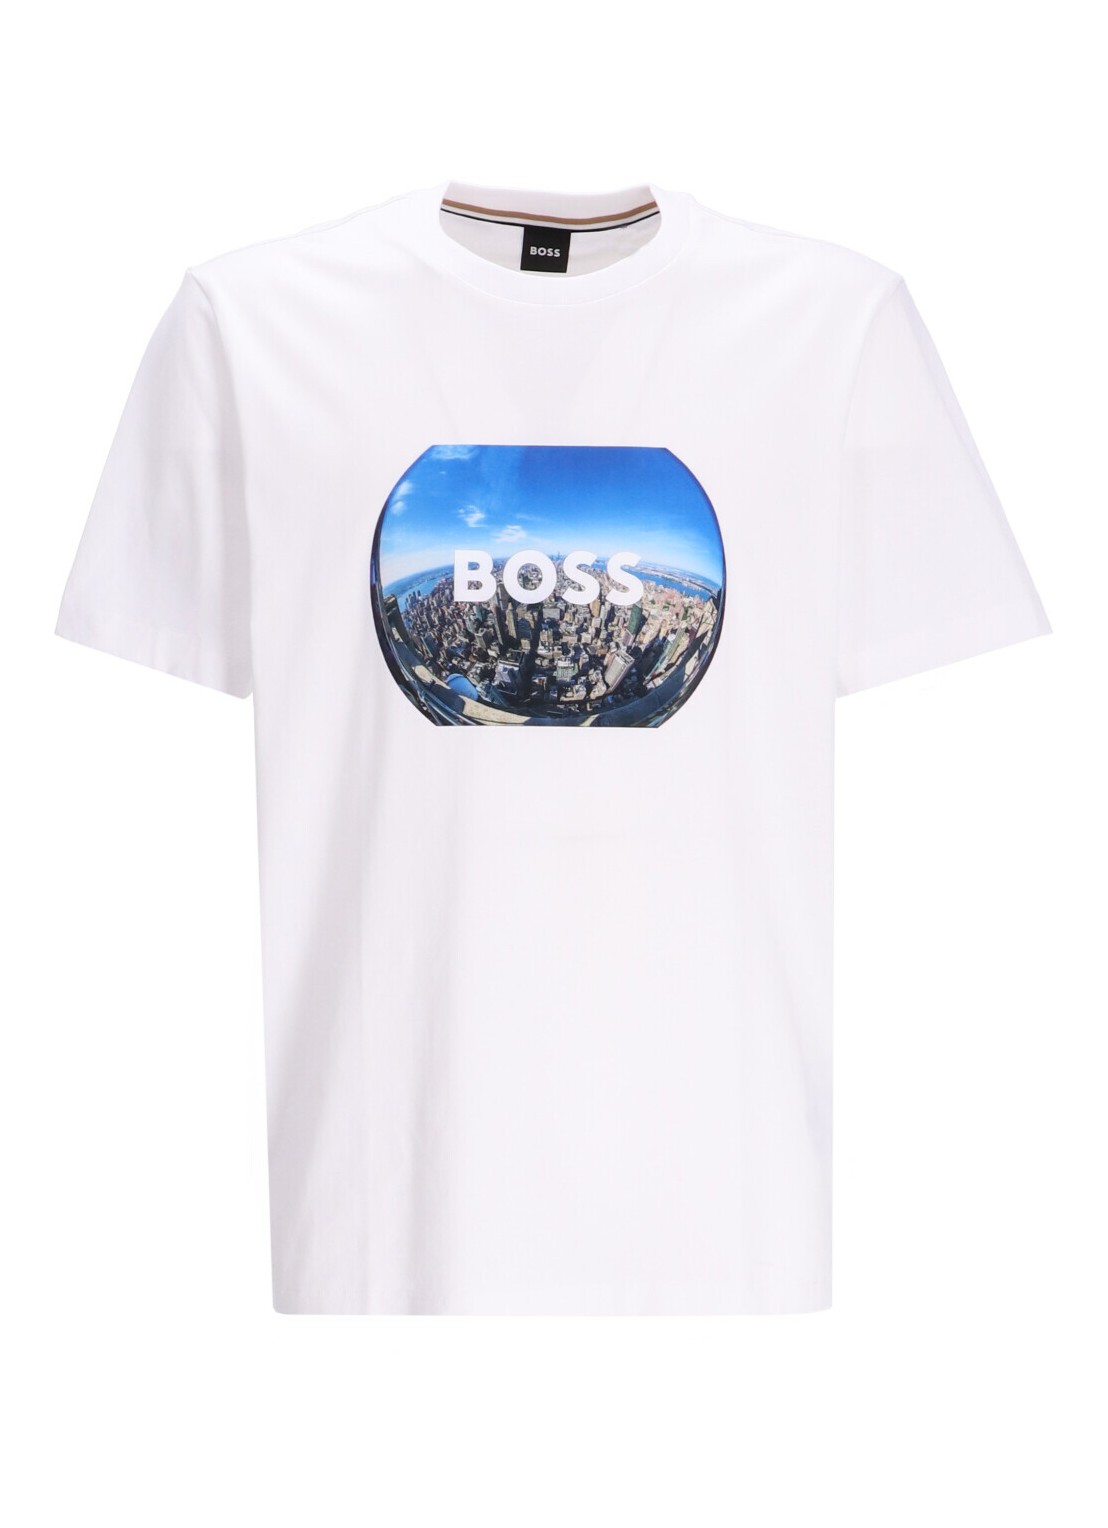 Camiseta boss t-shirt mantiburt 511 - 50512110 101 talla S
 